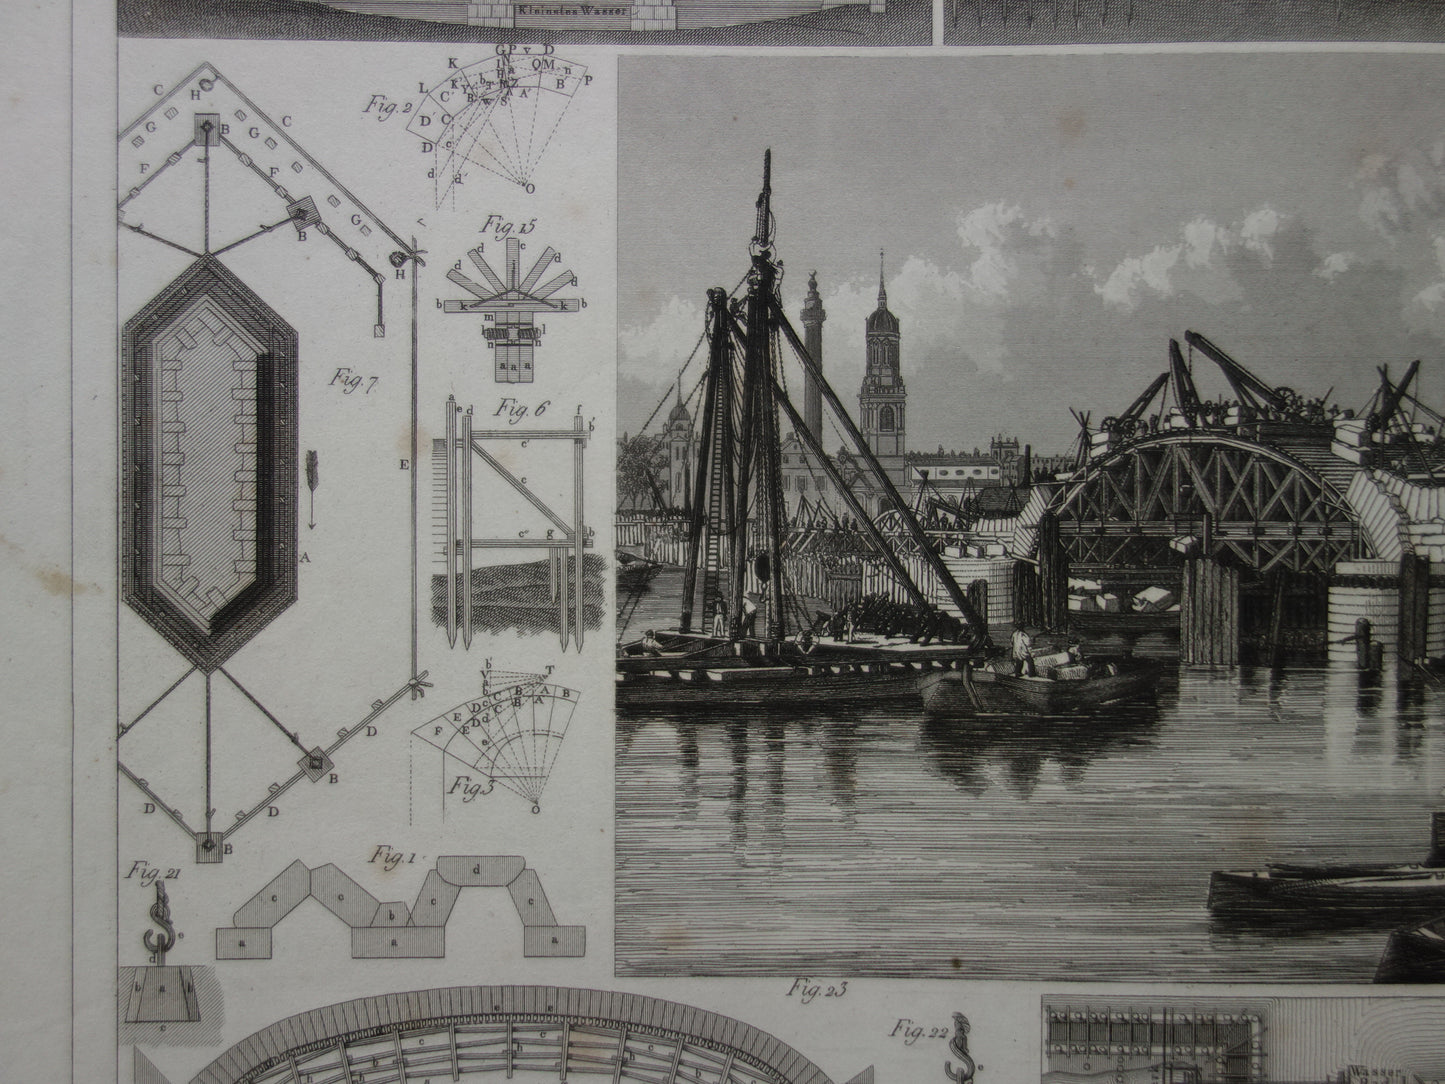 Oude technologie prent over bouw van bruggen antieke architectuur print brug bouwkunde bruggenbouw vintage prints